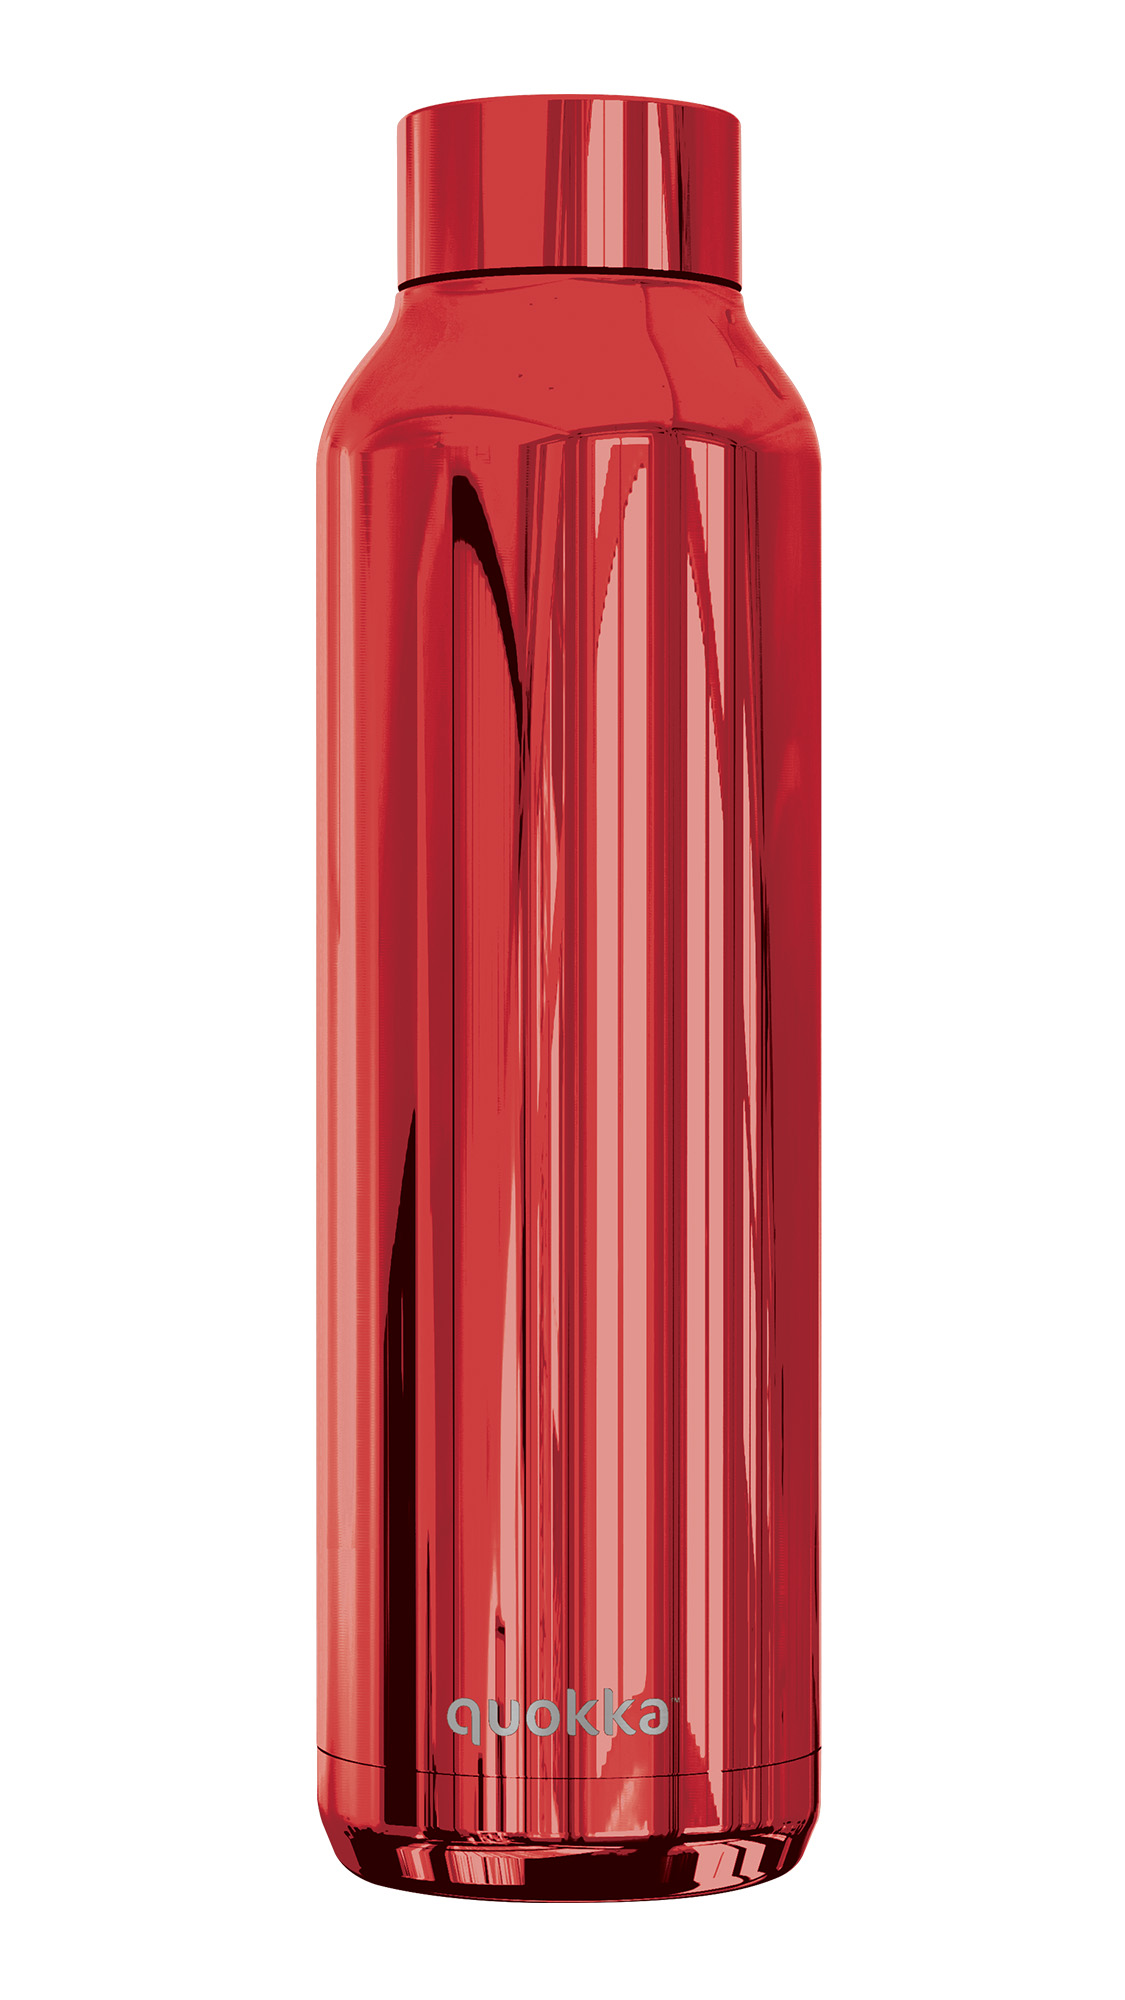 زجاجة ستانلس ستيل، باللون احمر لامع، 630 مل من كوكا